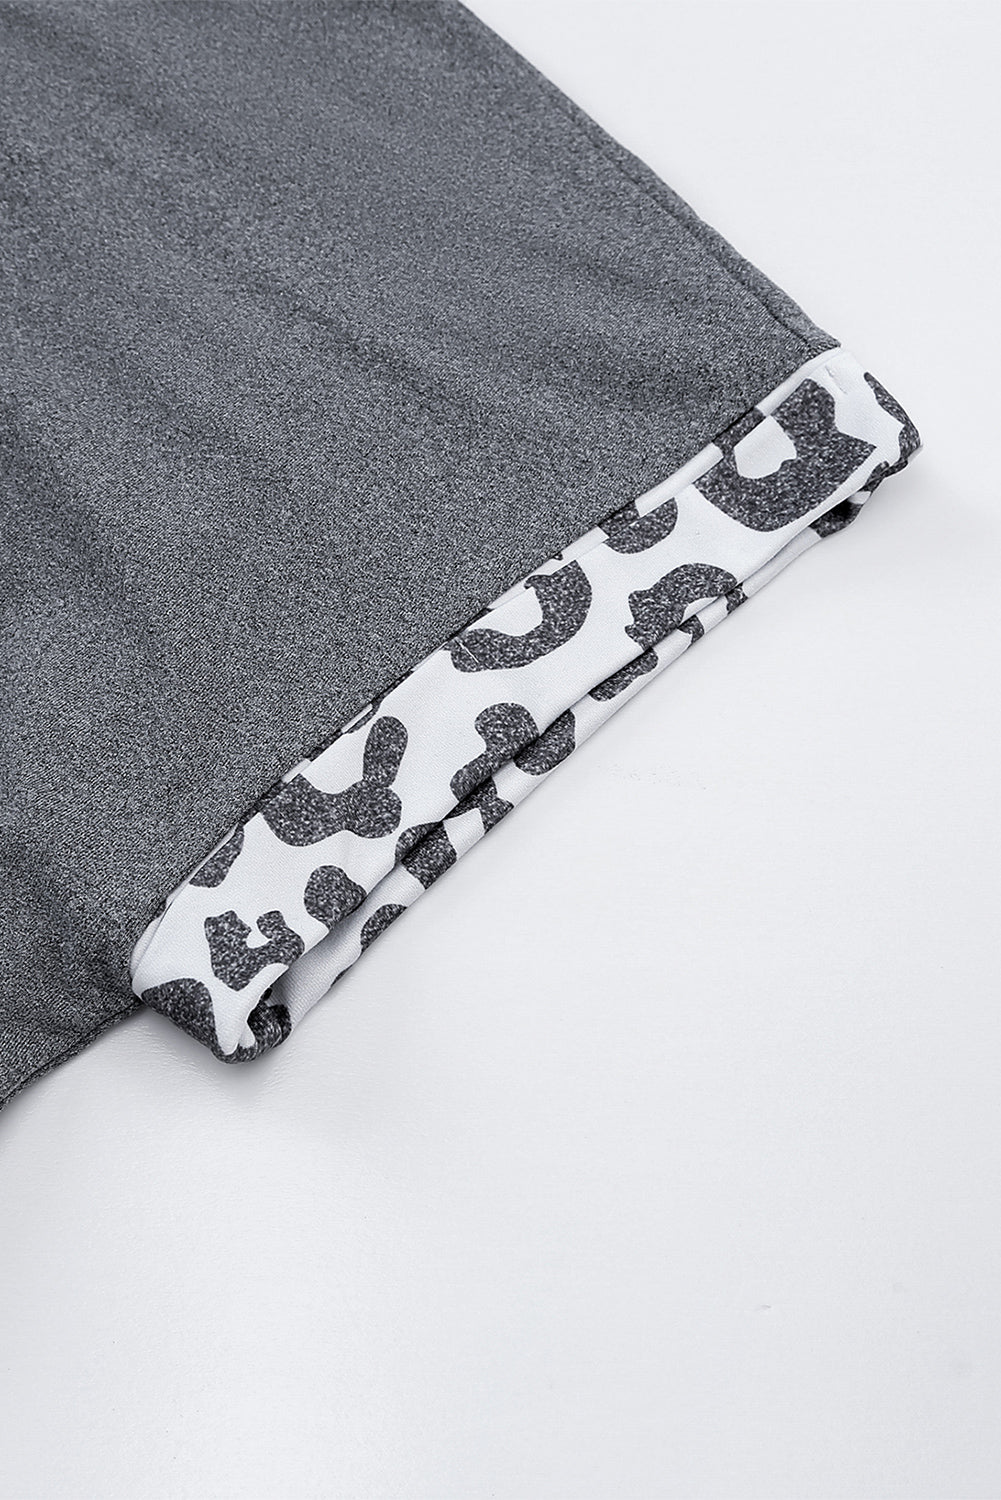 Grey Leopard Print Short Sleeve Side Slits Pocket Dress